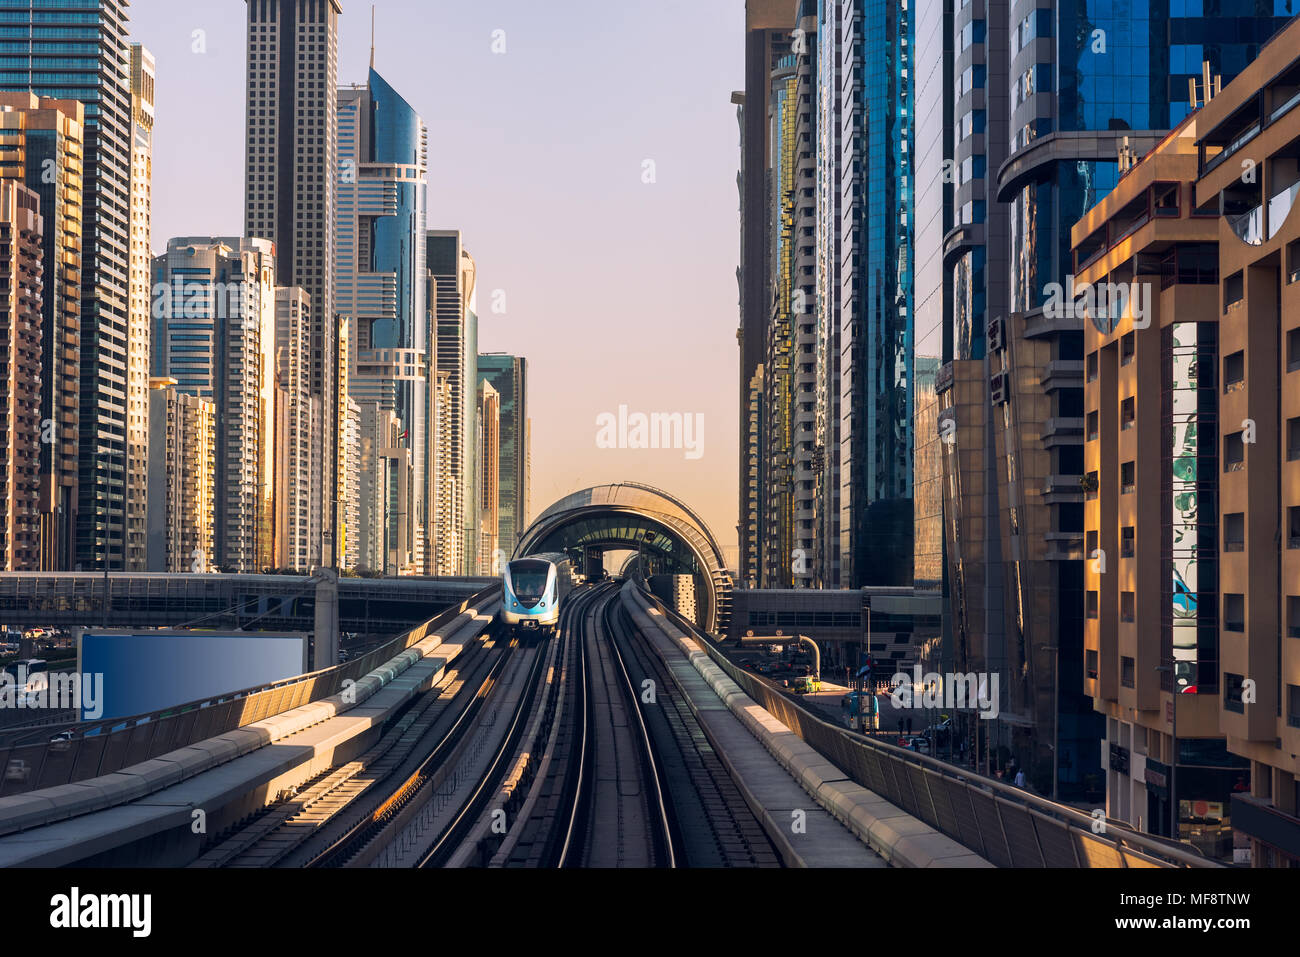 Dubai's downtown architecture with metro monorail train Stock Photo